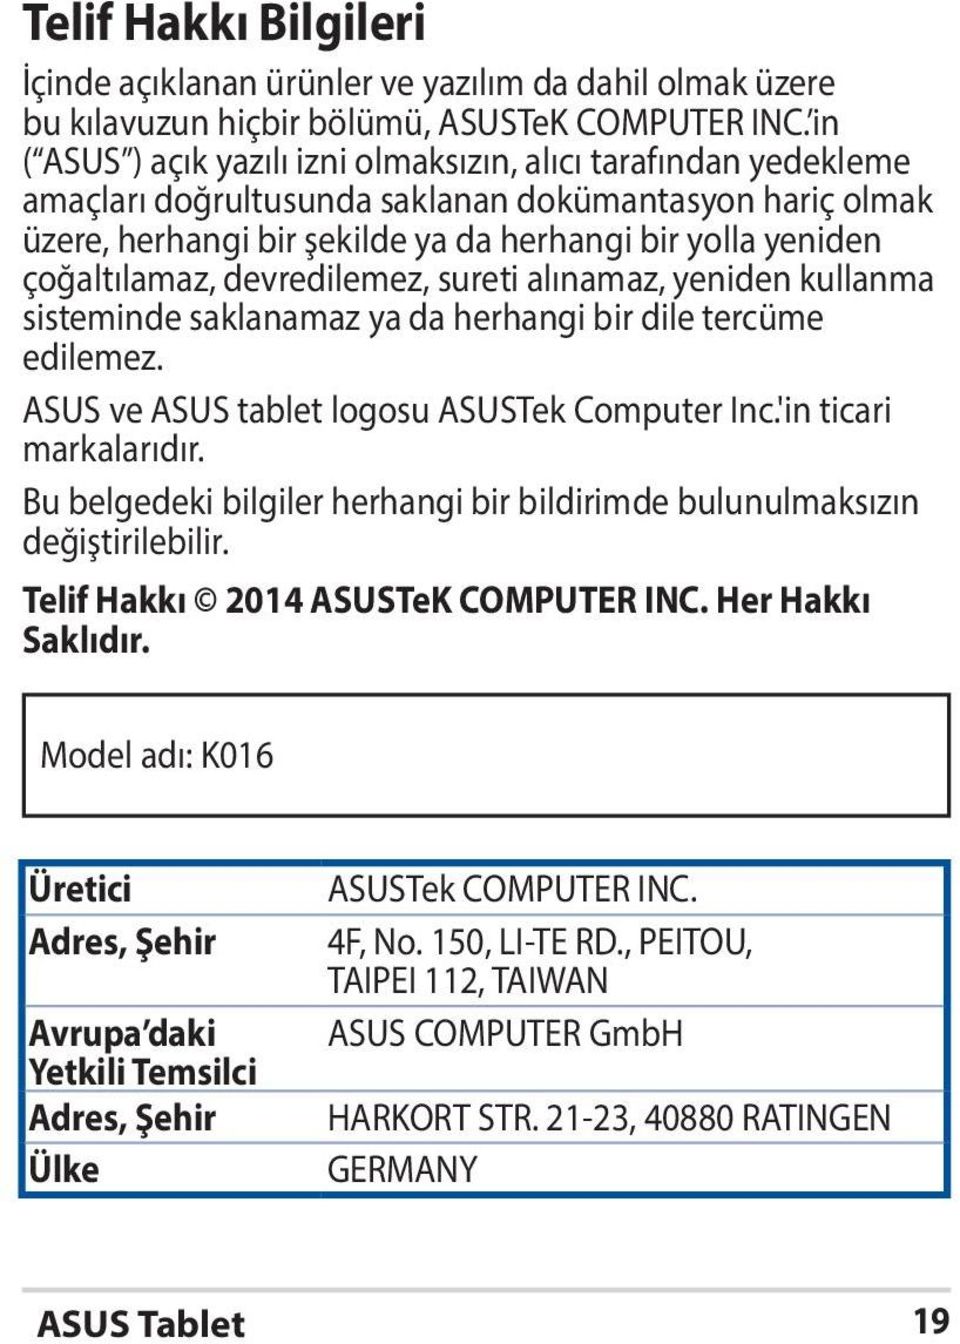 çoğaltılamaz, devredilemez, sureti alınamaz, yeniden kullanma sisteminde saklanamaz ya da herhangi bir dile tercüme edilemez. ASUS ve ASUS tablet logosu ASUSTek Computer Inc.'in ticari markalarıdır.